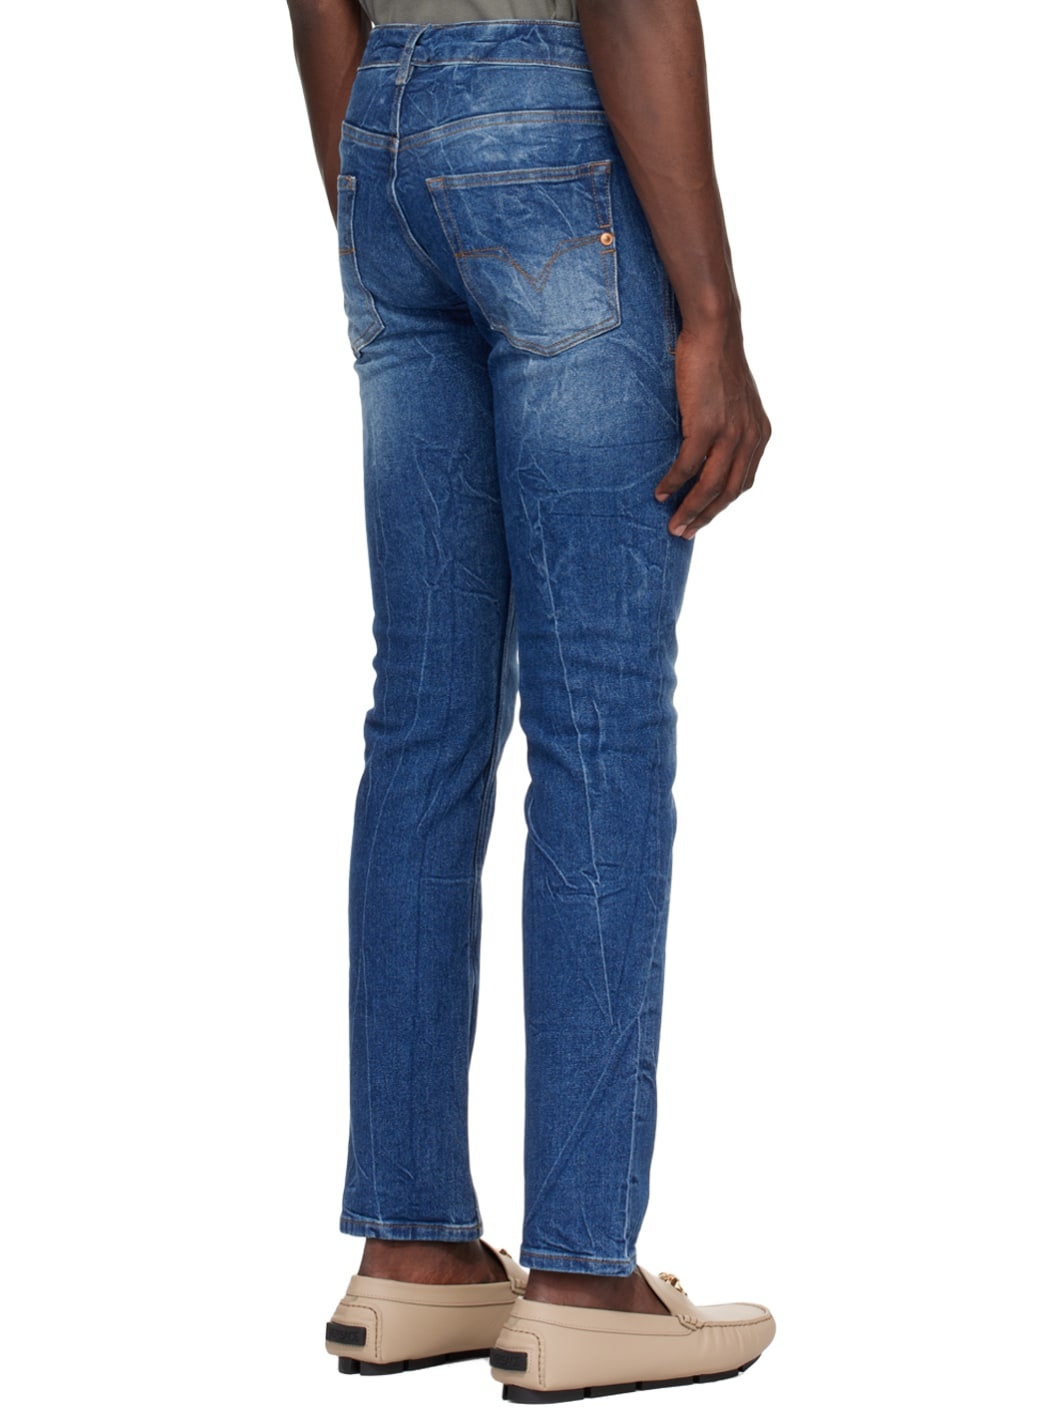 Indigo Slim-Fit Jeans - 3